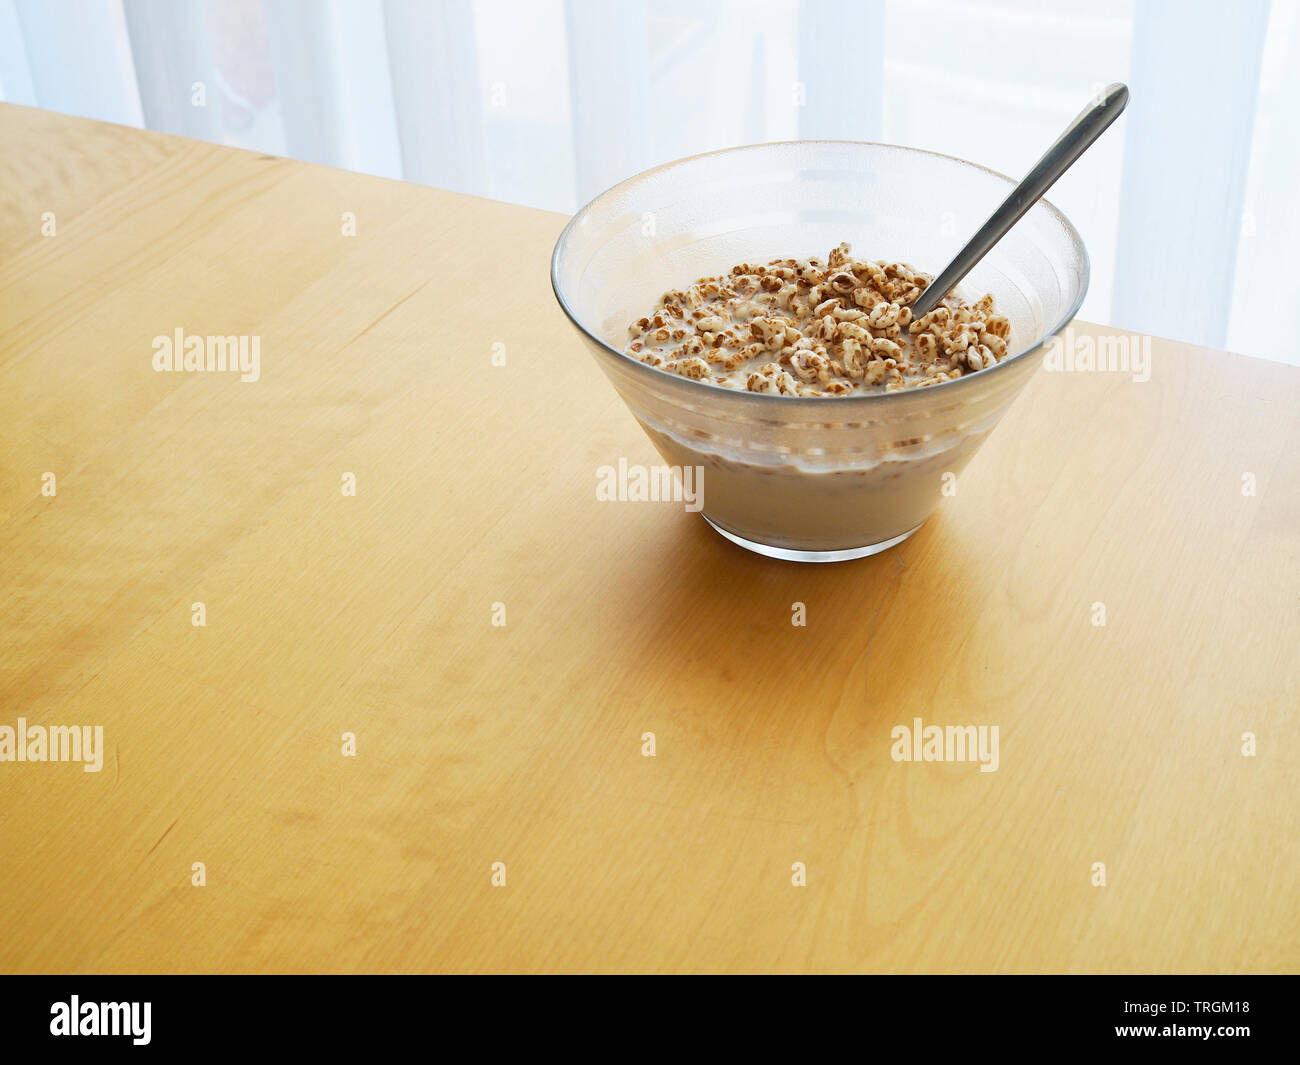 Frühstück, gepufftes Getreide mit Milch in Glasschüssel Stock Photo